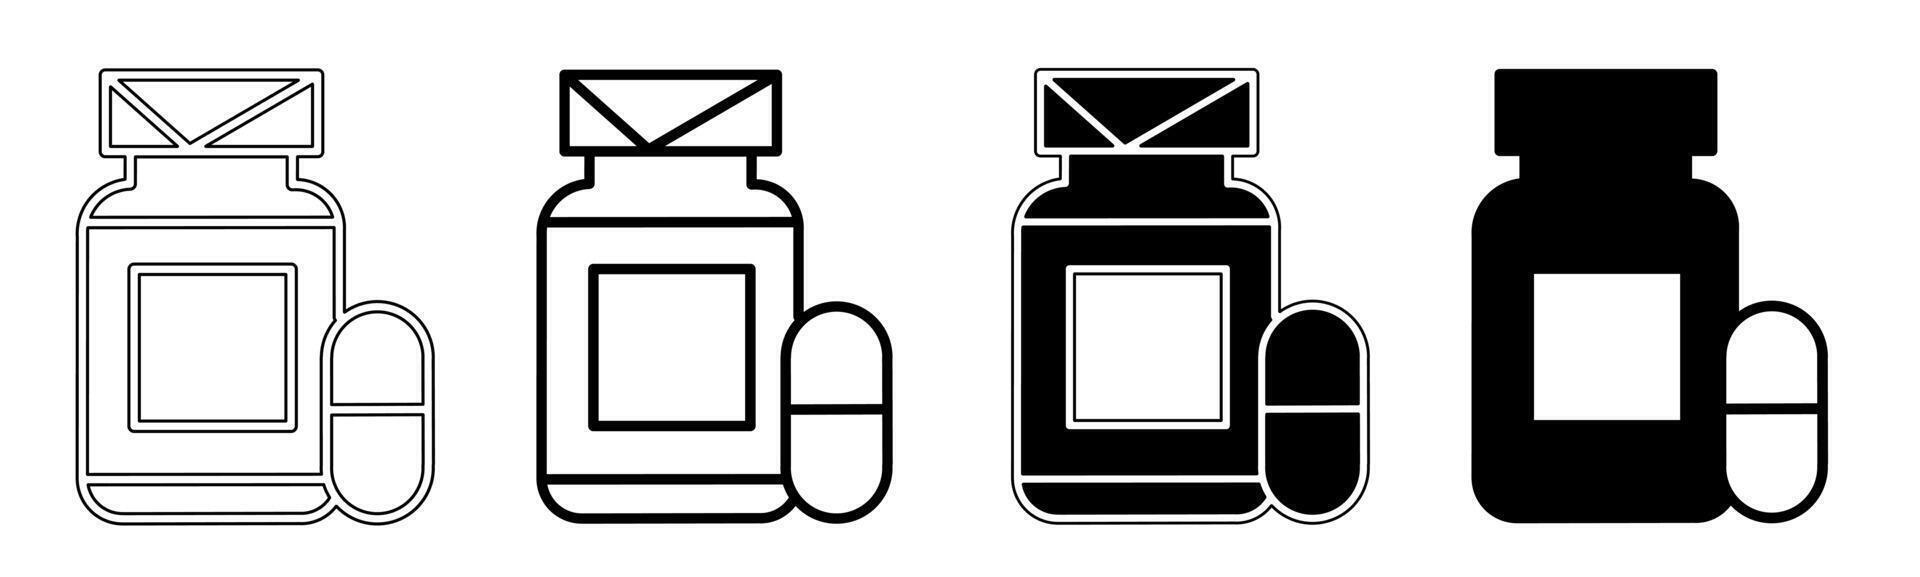 svart och vit illustration av en läkemedel kapsel. kapsel , läkemedel ikon samling med linje. stock vektor illustration.